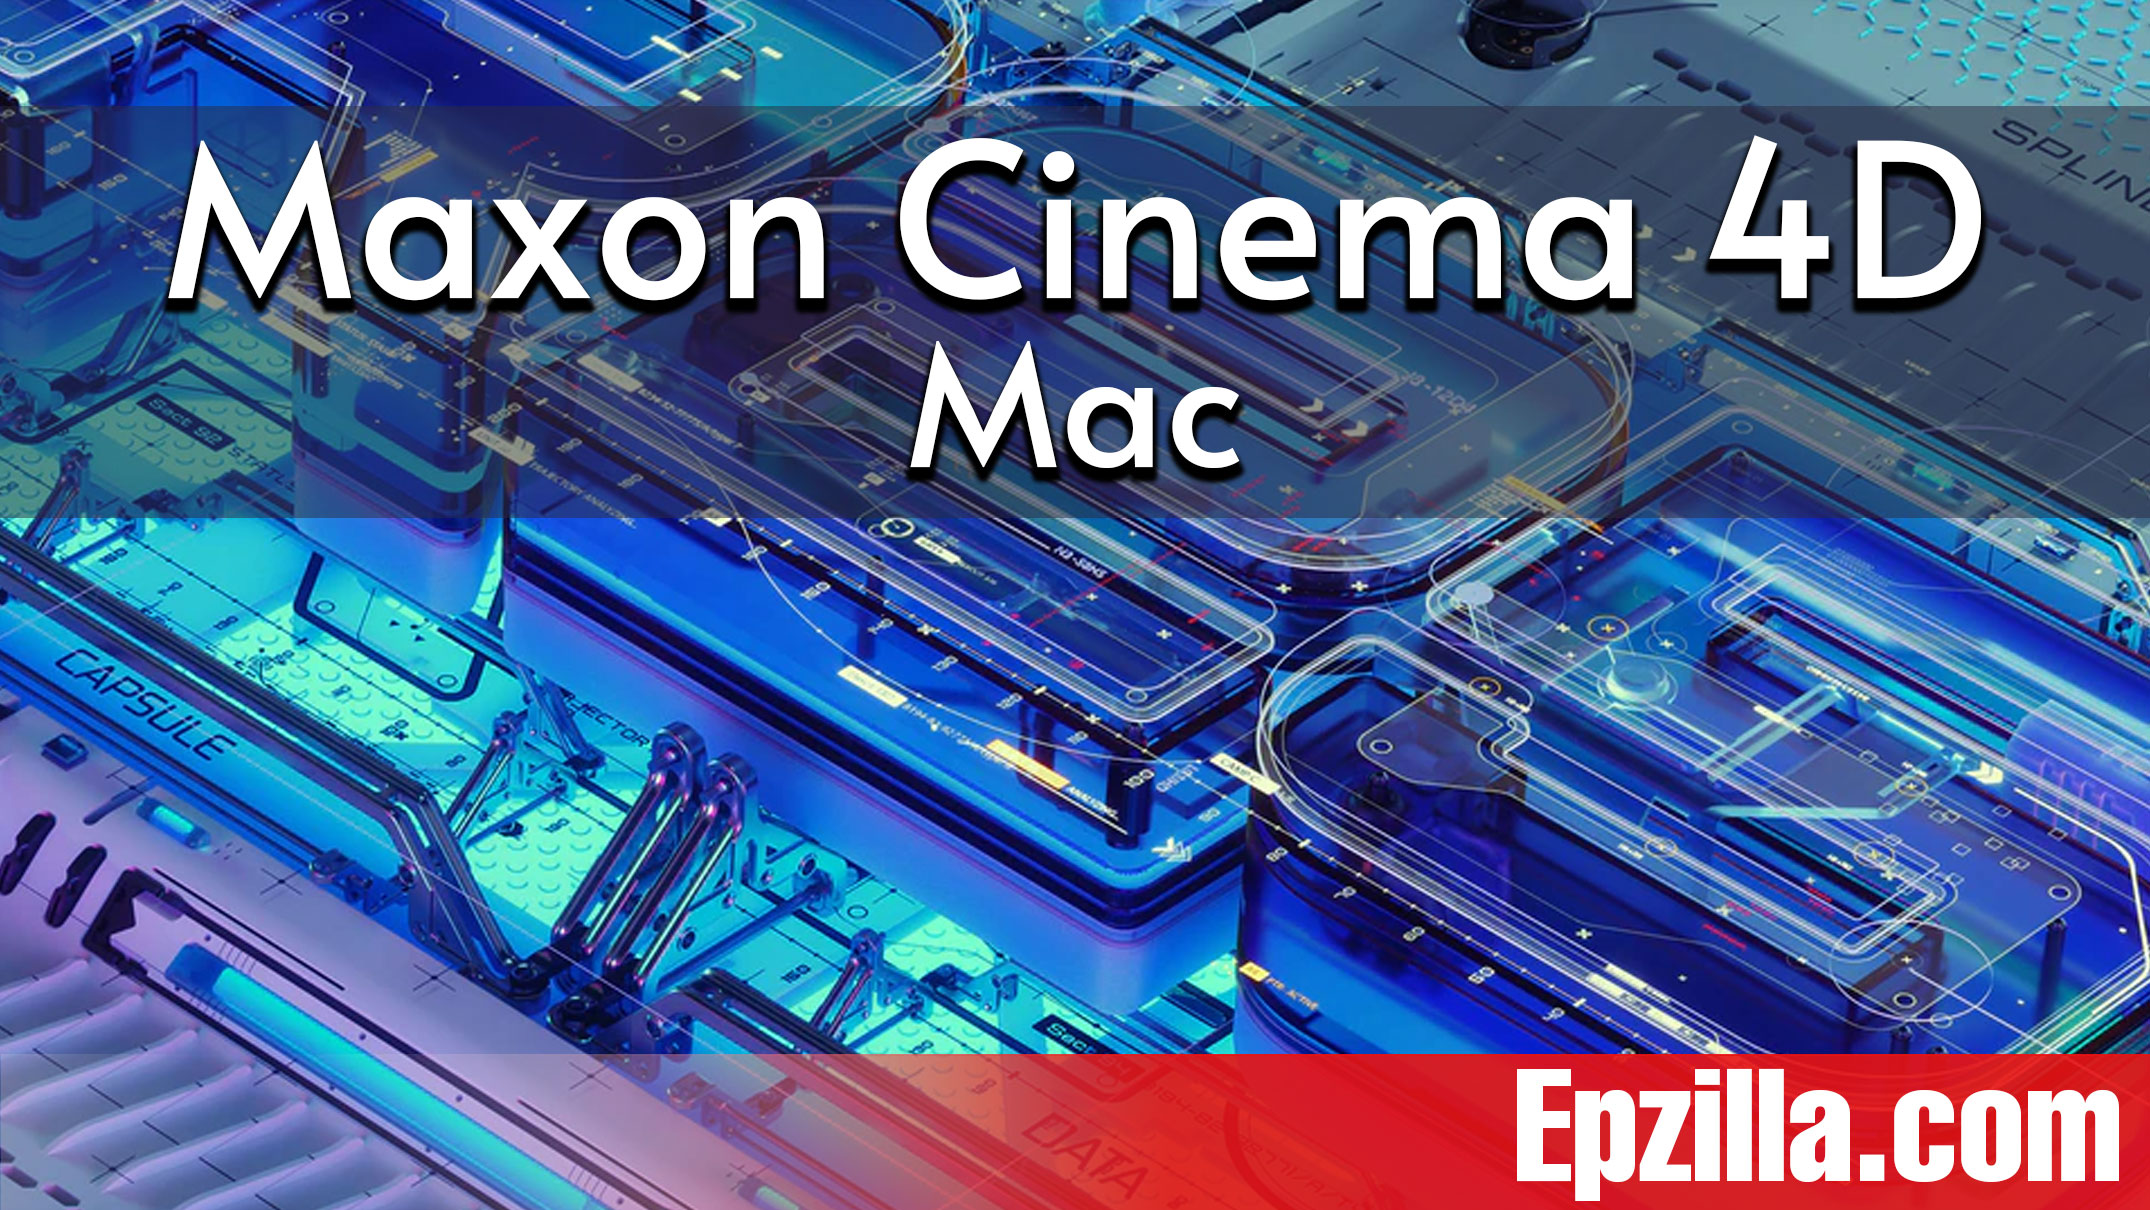 Maxon Cinema 4D R25.010 For Mac Free Download Epzilla.com